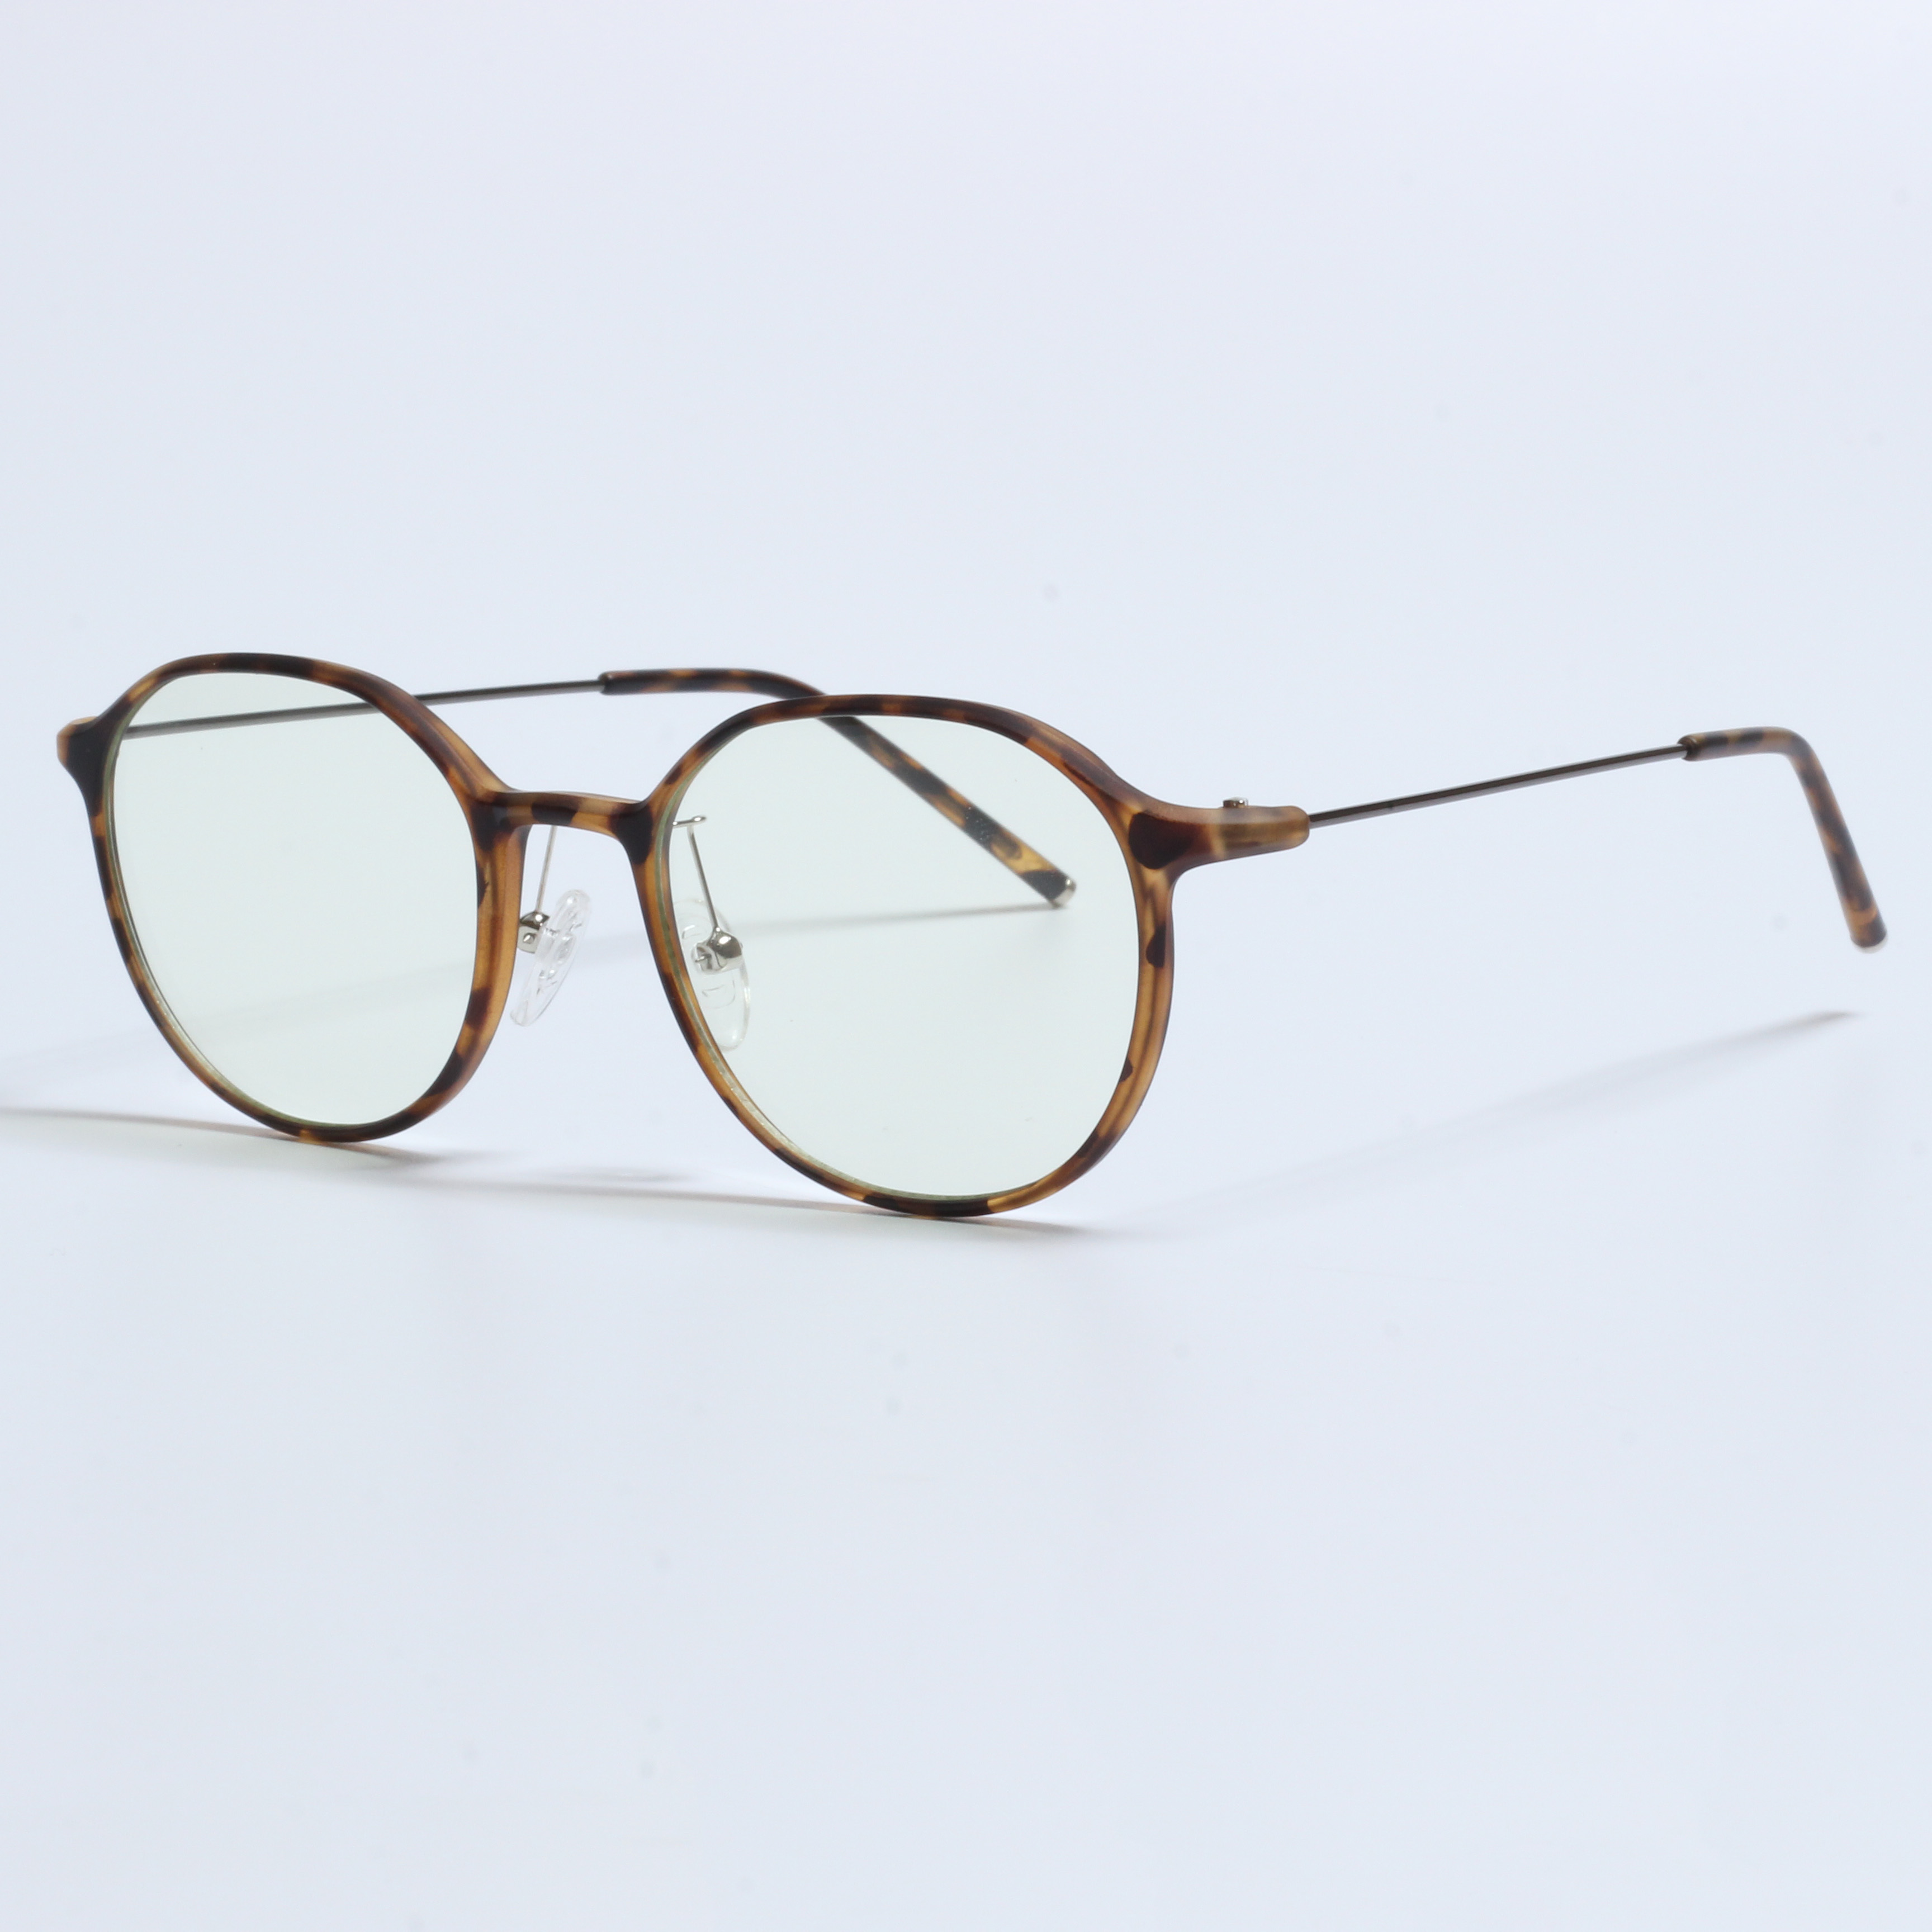 Vintage Thick Gafas Opticas De Hombres Transparentní rámy TR90 (6)